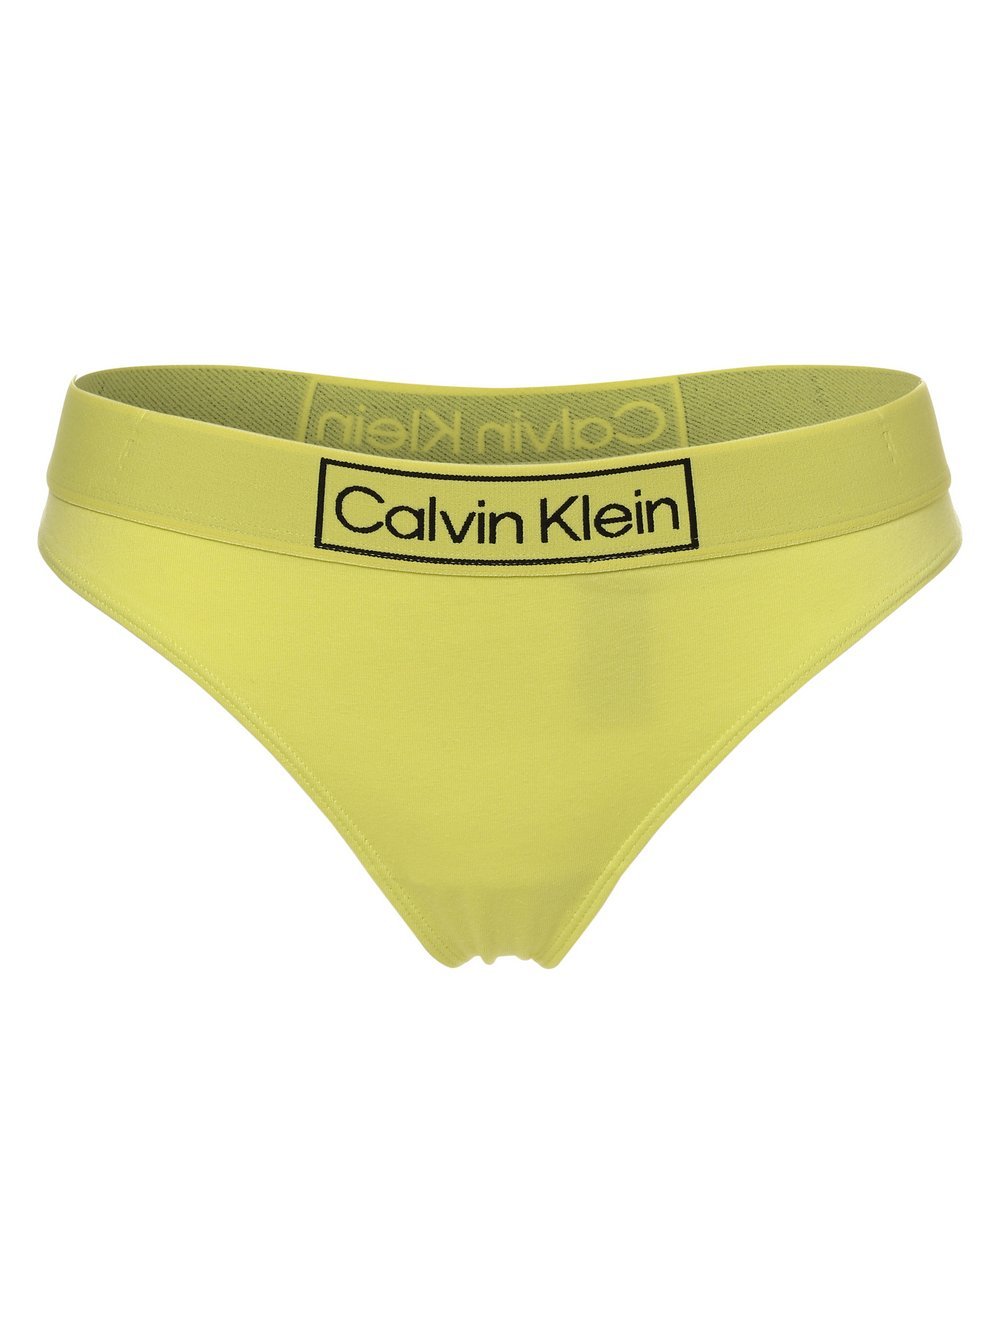 Calvin Klein - Stringi damskie, żółty